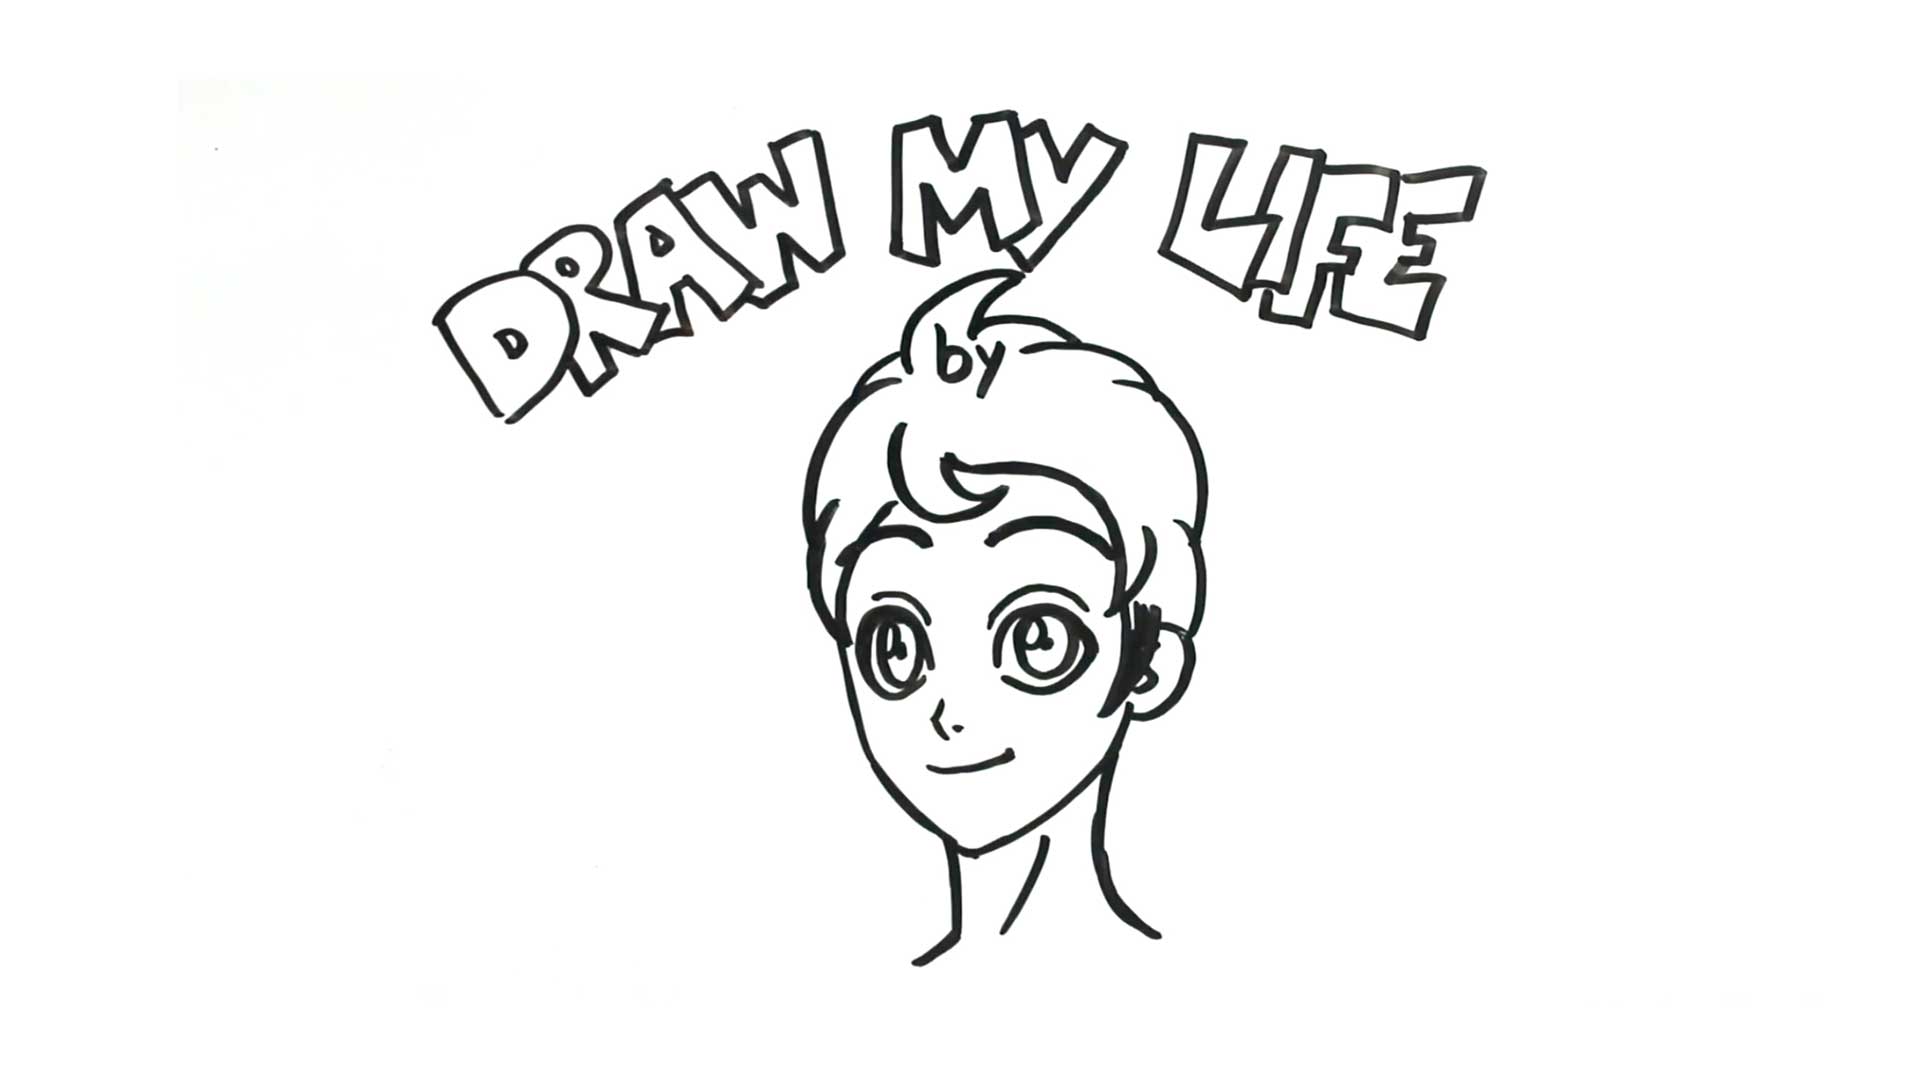 Draw My Life de Kevin Farias